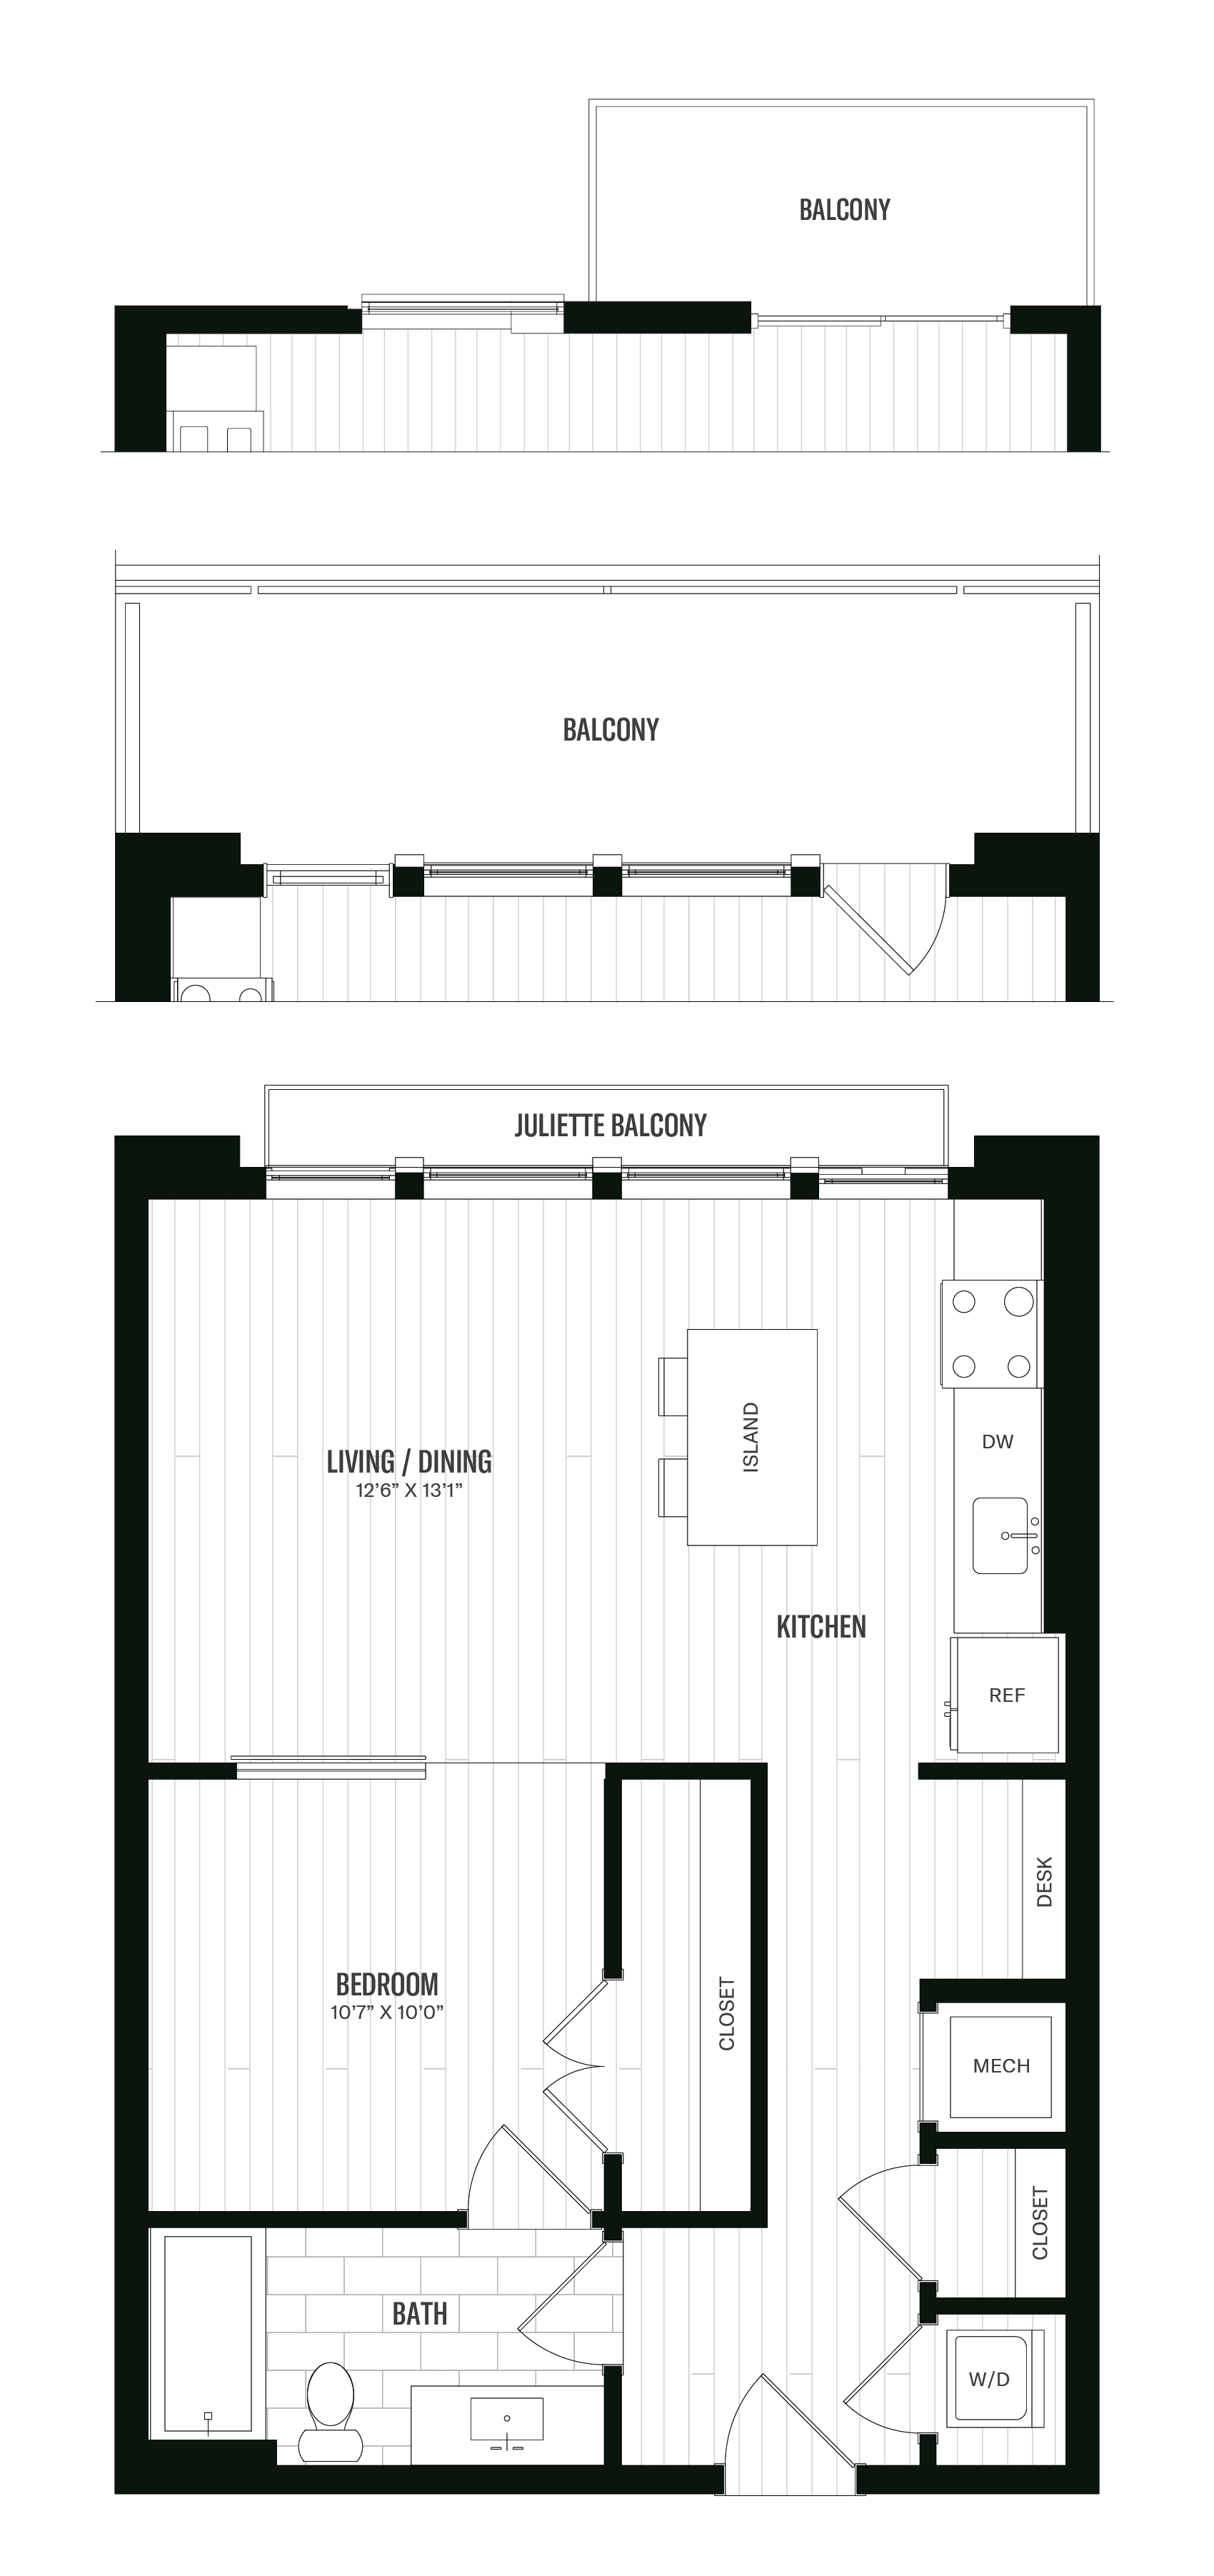 Floorplan image of unit 211